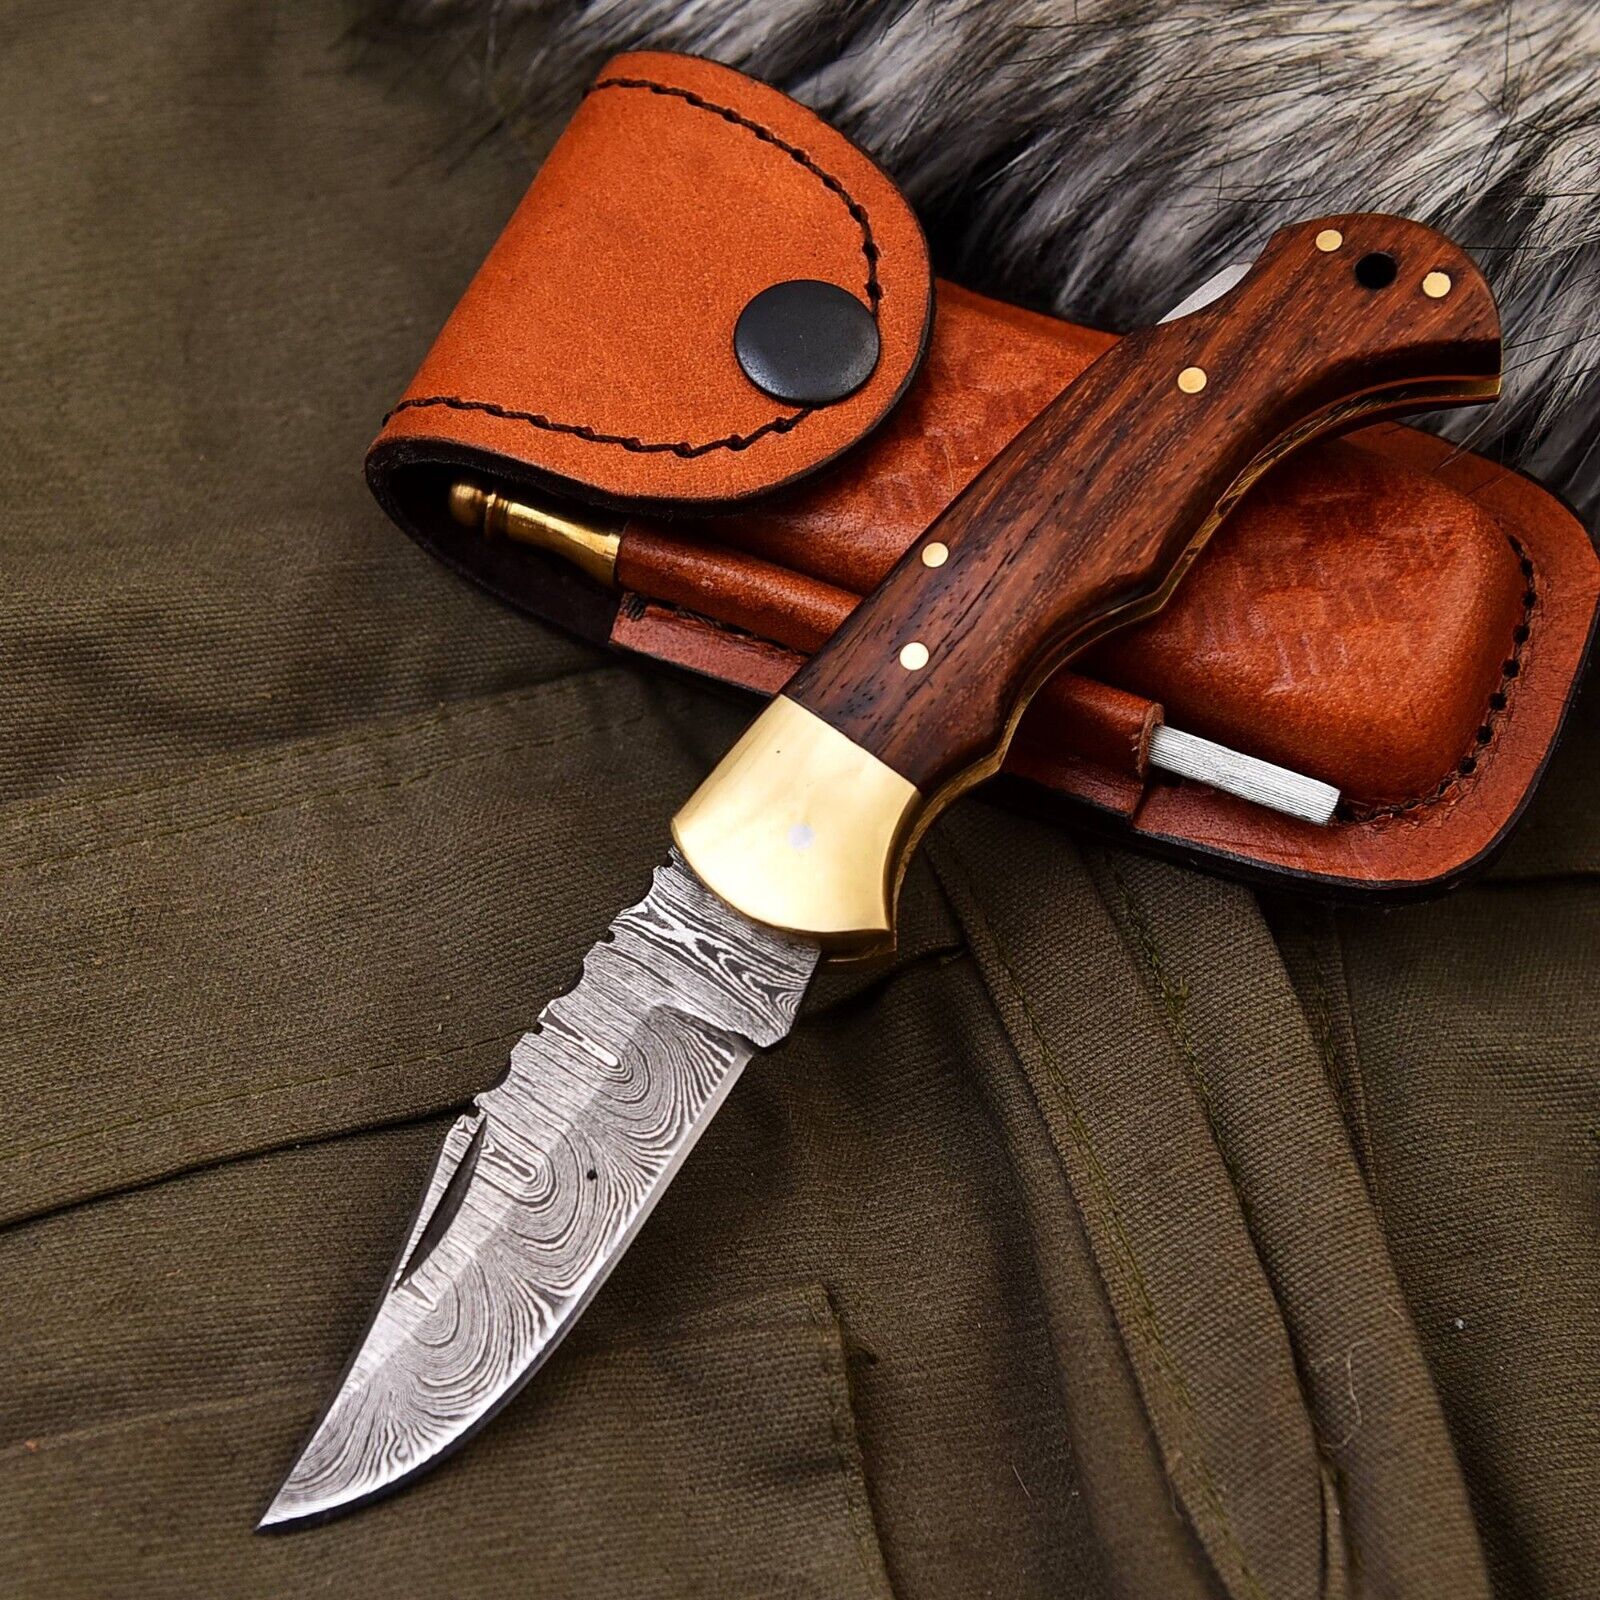 Custom Handmade Damascus Pocket Knife Folding Knife With Leather Sheath EDC